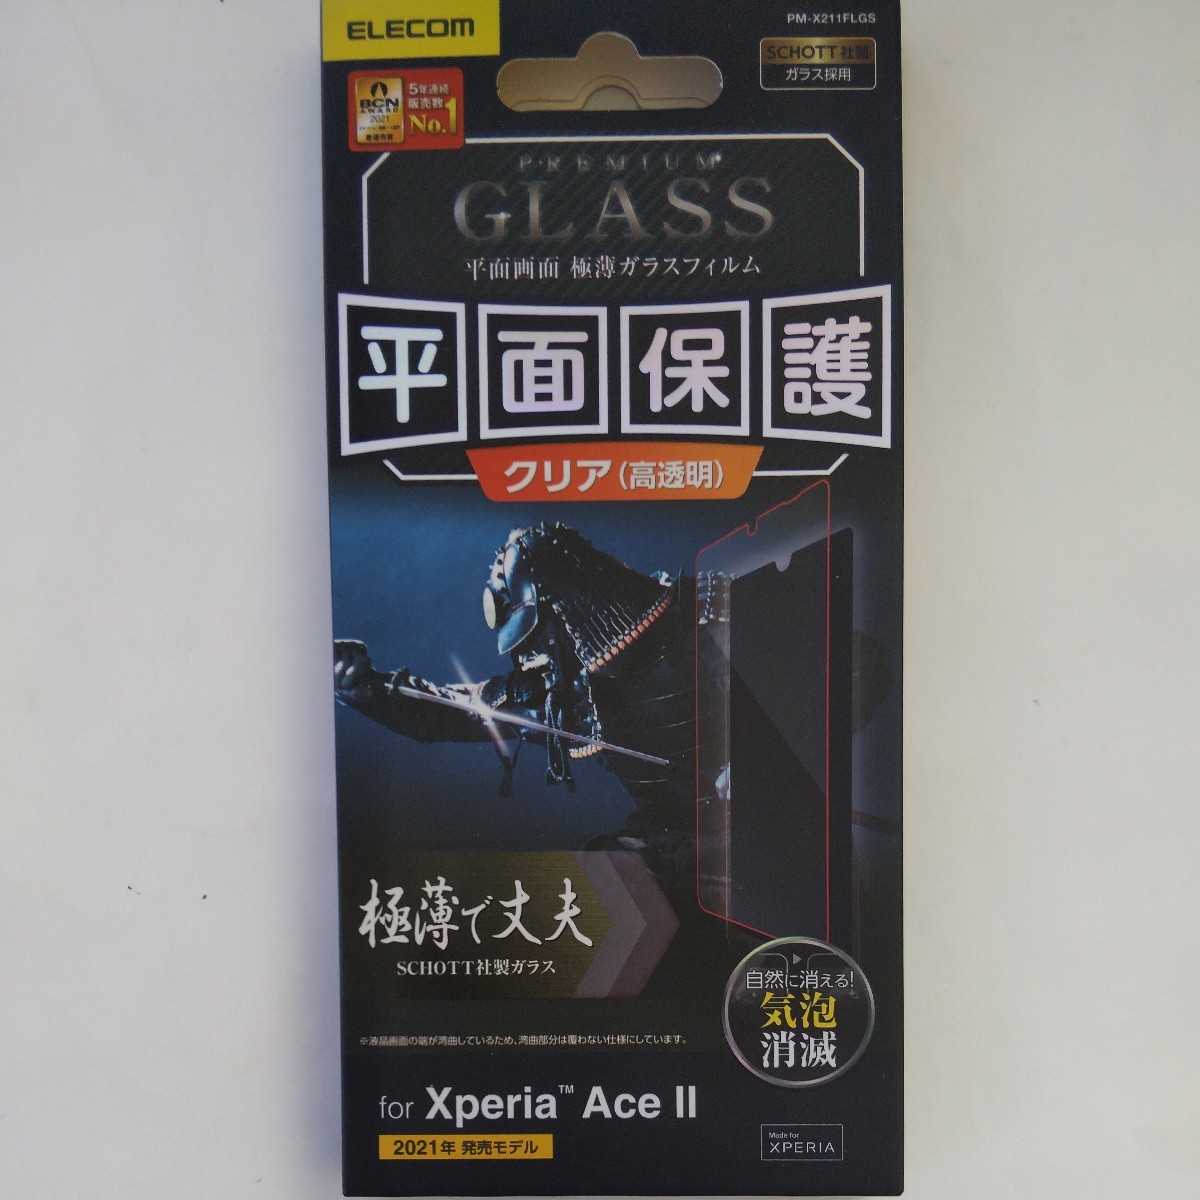 Xperia Ace II ガラスフィルム 極薄で丈夫 0.15mm 指紋防止 飛散防止 エアーレス なめらかな指滑り、強じんかつ極薄0.15mm仕様 エレコム 